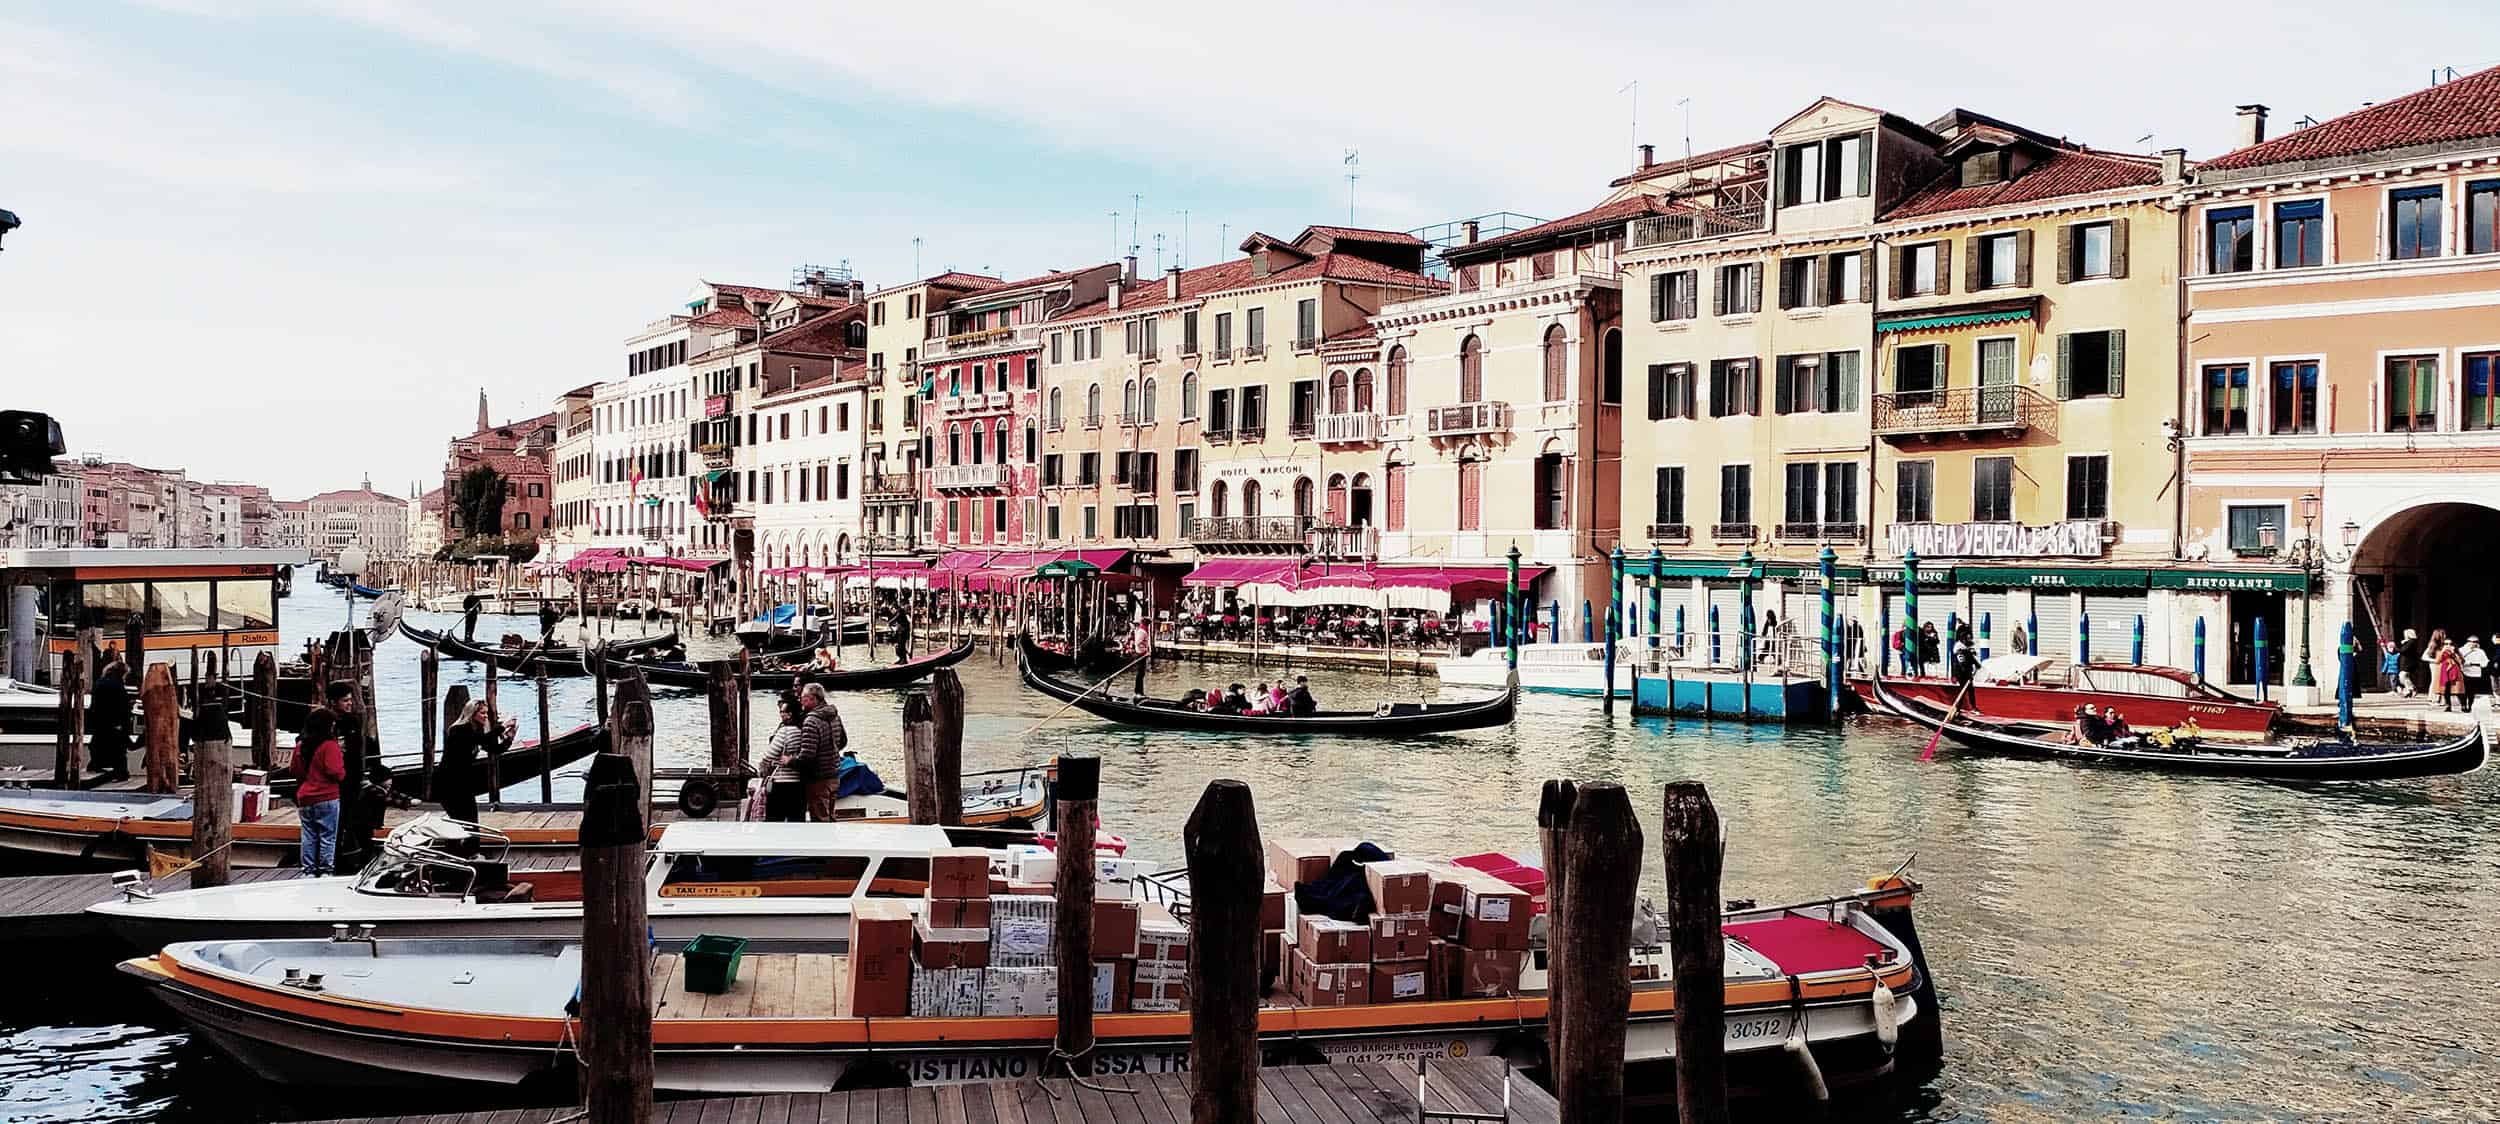 Kanal og brygge i Venezia omkranset av turister